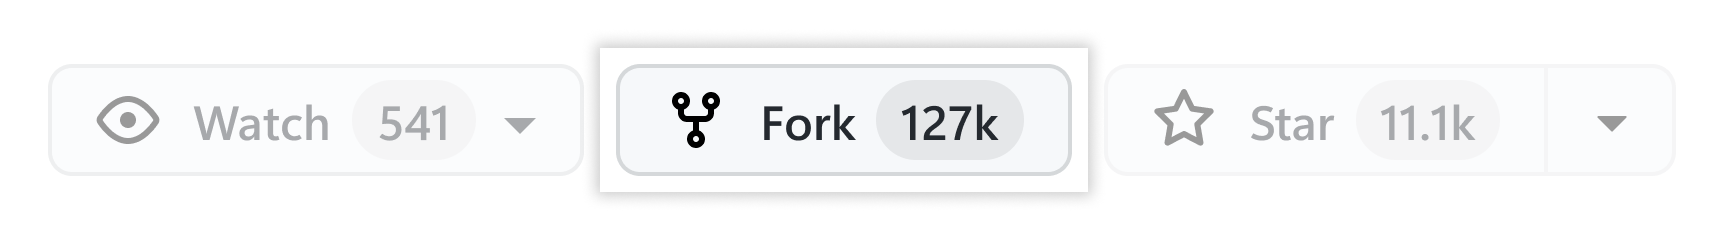 fork_button